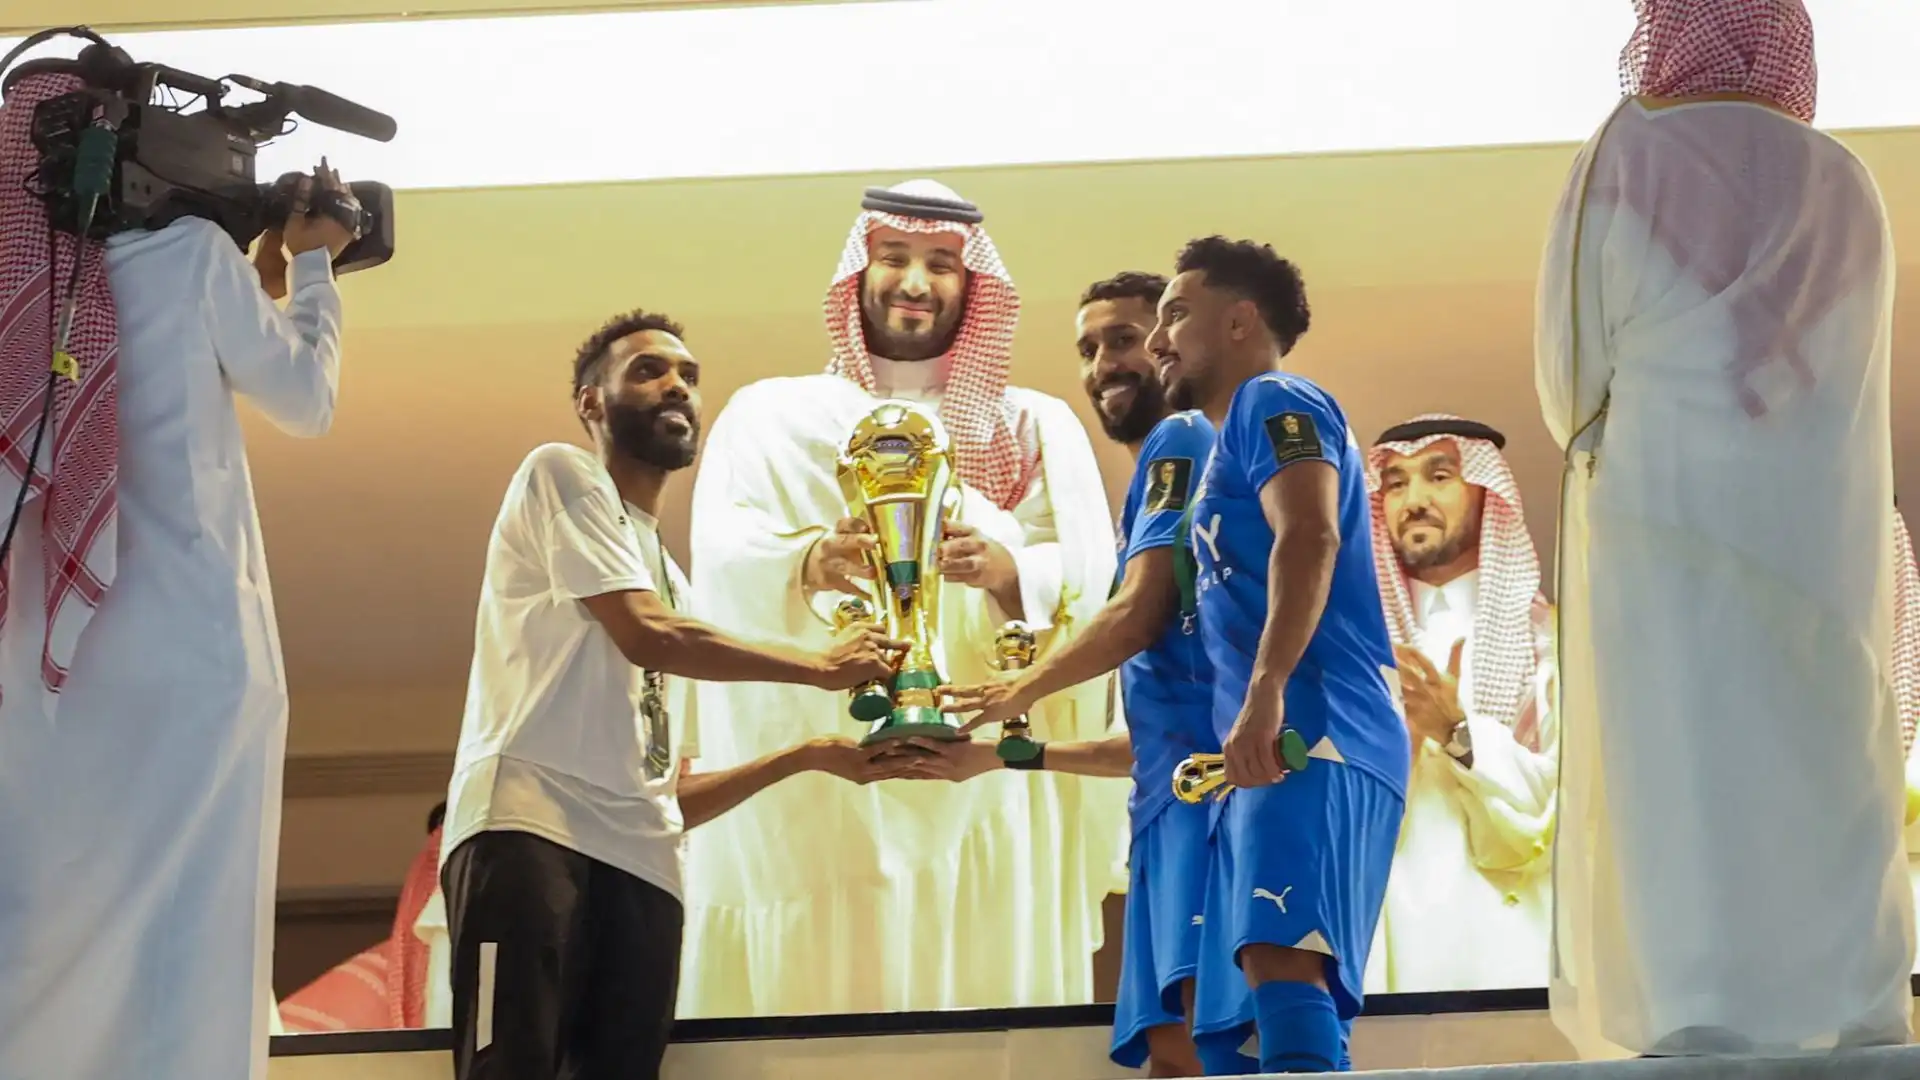 Il trofeo è invece stato sollevato dall'Al-Hilal, che dopo aver vinto il campionato ha trionfato anche in coppa